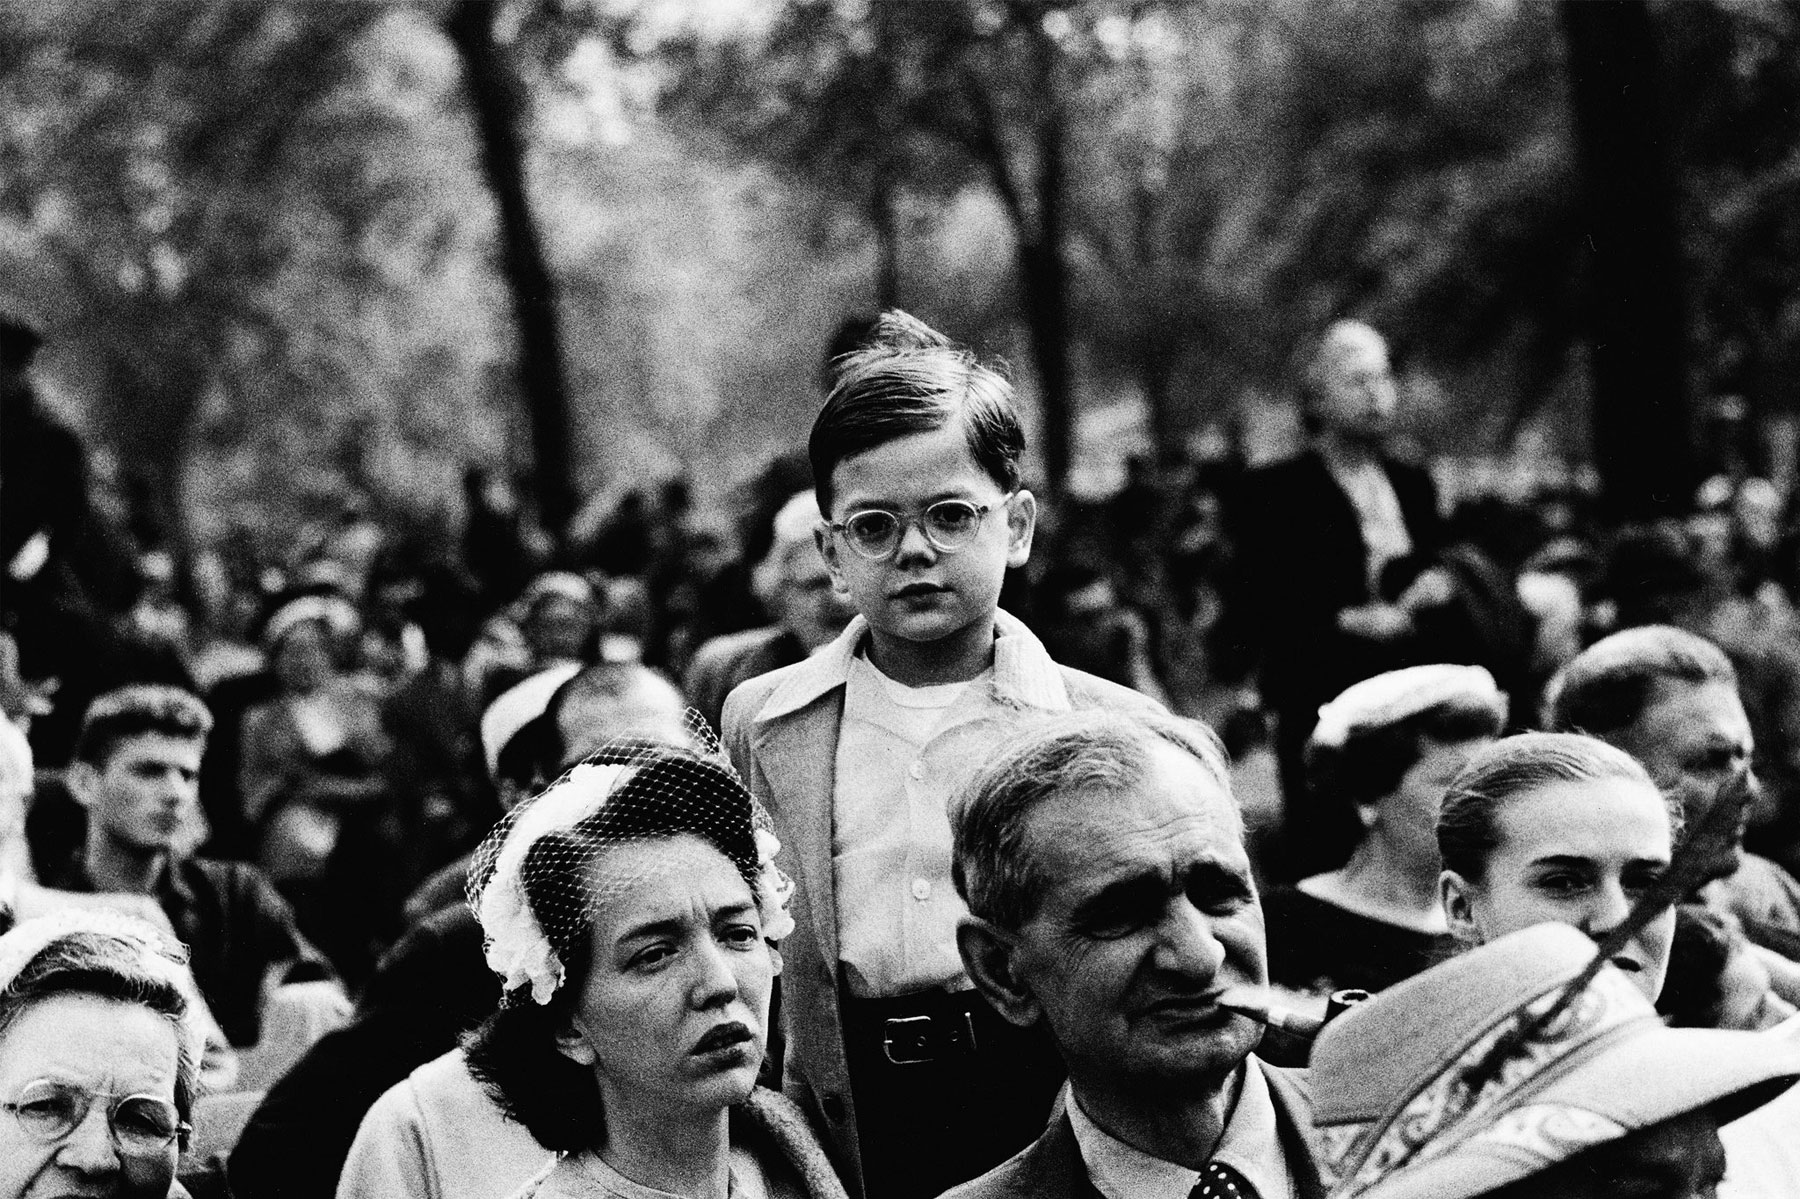 Diane Arbus (American, 1923-1971) 'Boy above a crowd, N.Y.C., 1957' 1957